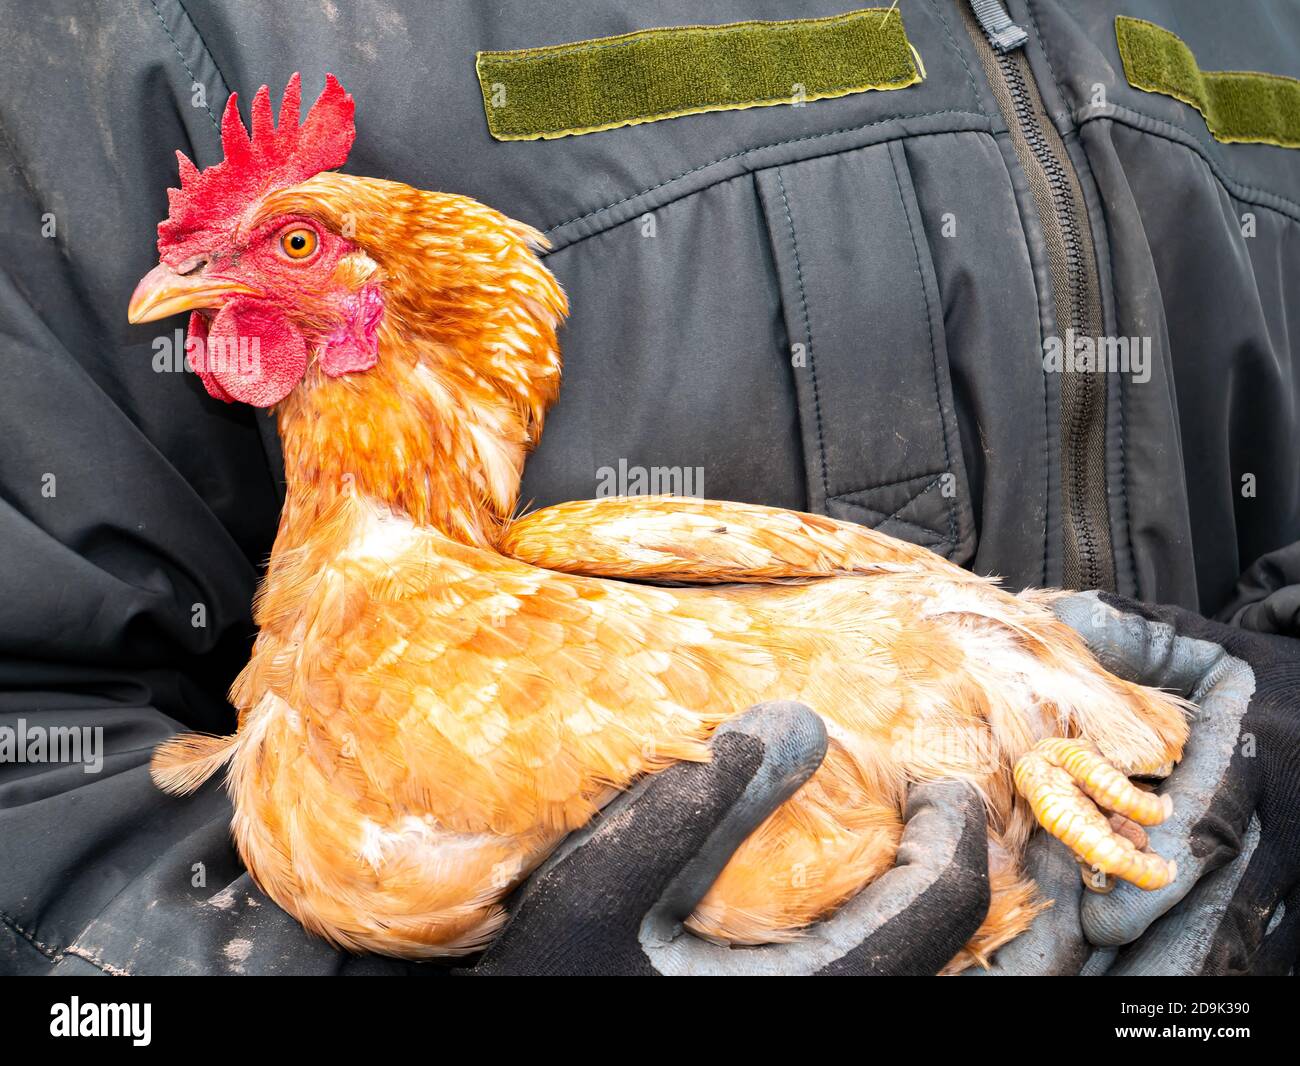 Geflügel braun Huhn sitzt auf den Händen eines Mannes Stockfotografie -  Alamy